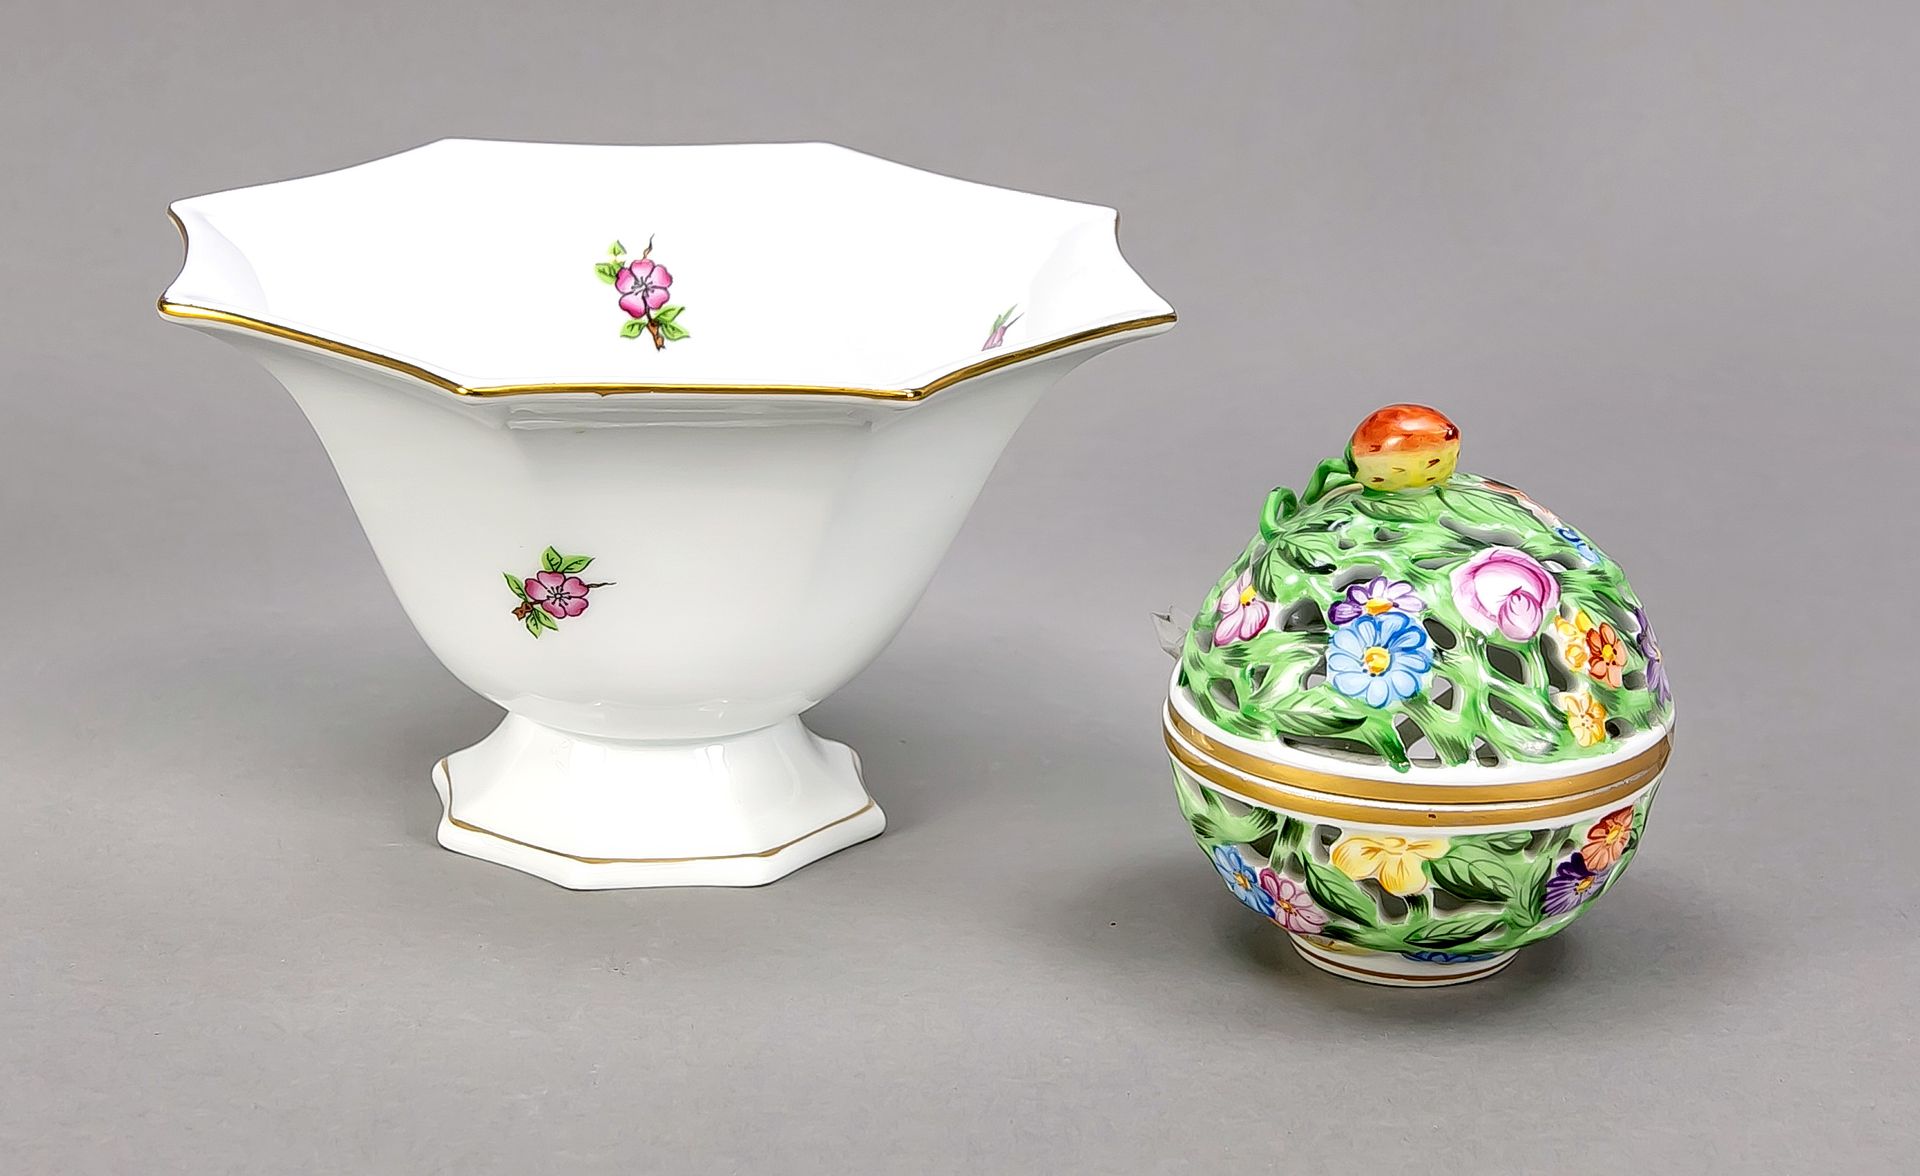 Null 小碗和bonbonnière，Herend，20世纪，八角形碗，有散花和金边，直径15.5厘米，球状的盖碗，有草莓状的把手，四周有穿墙，直径7厘米